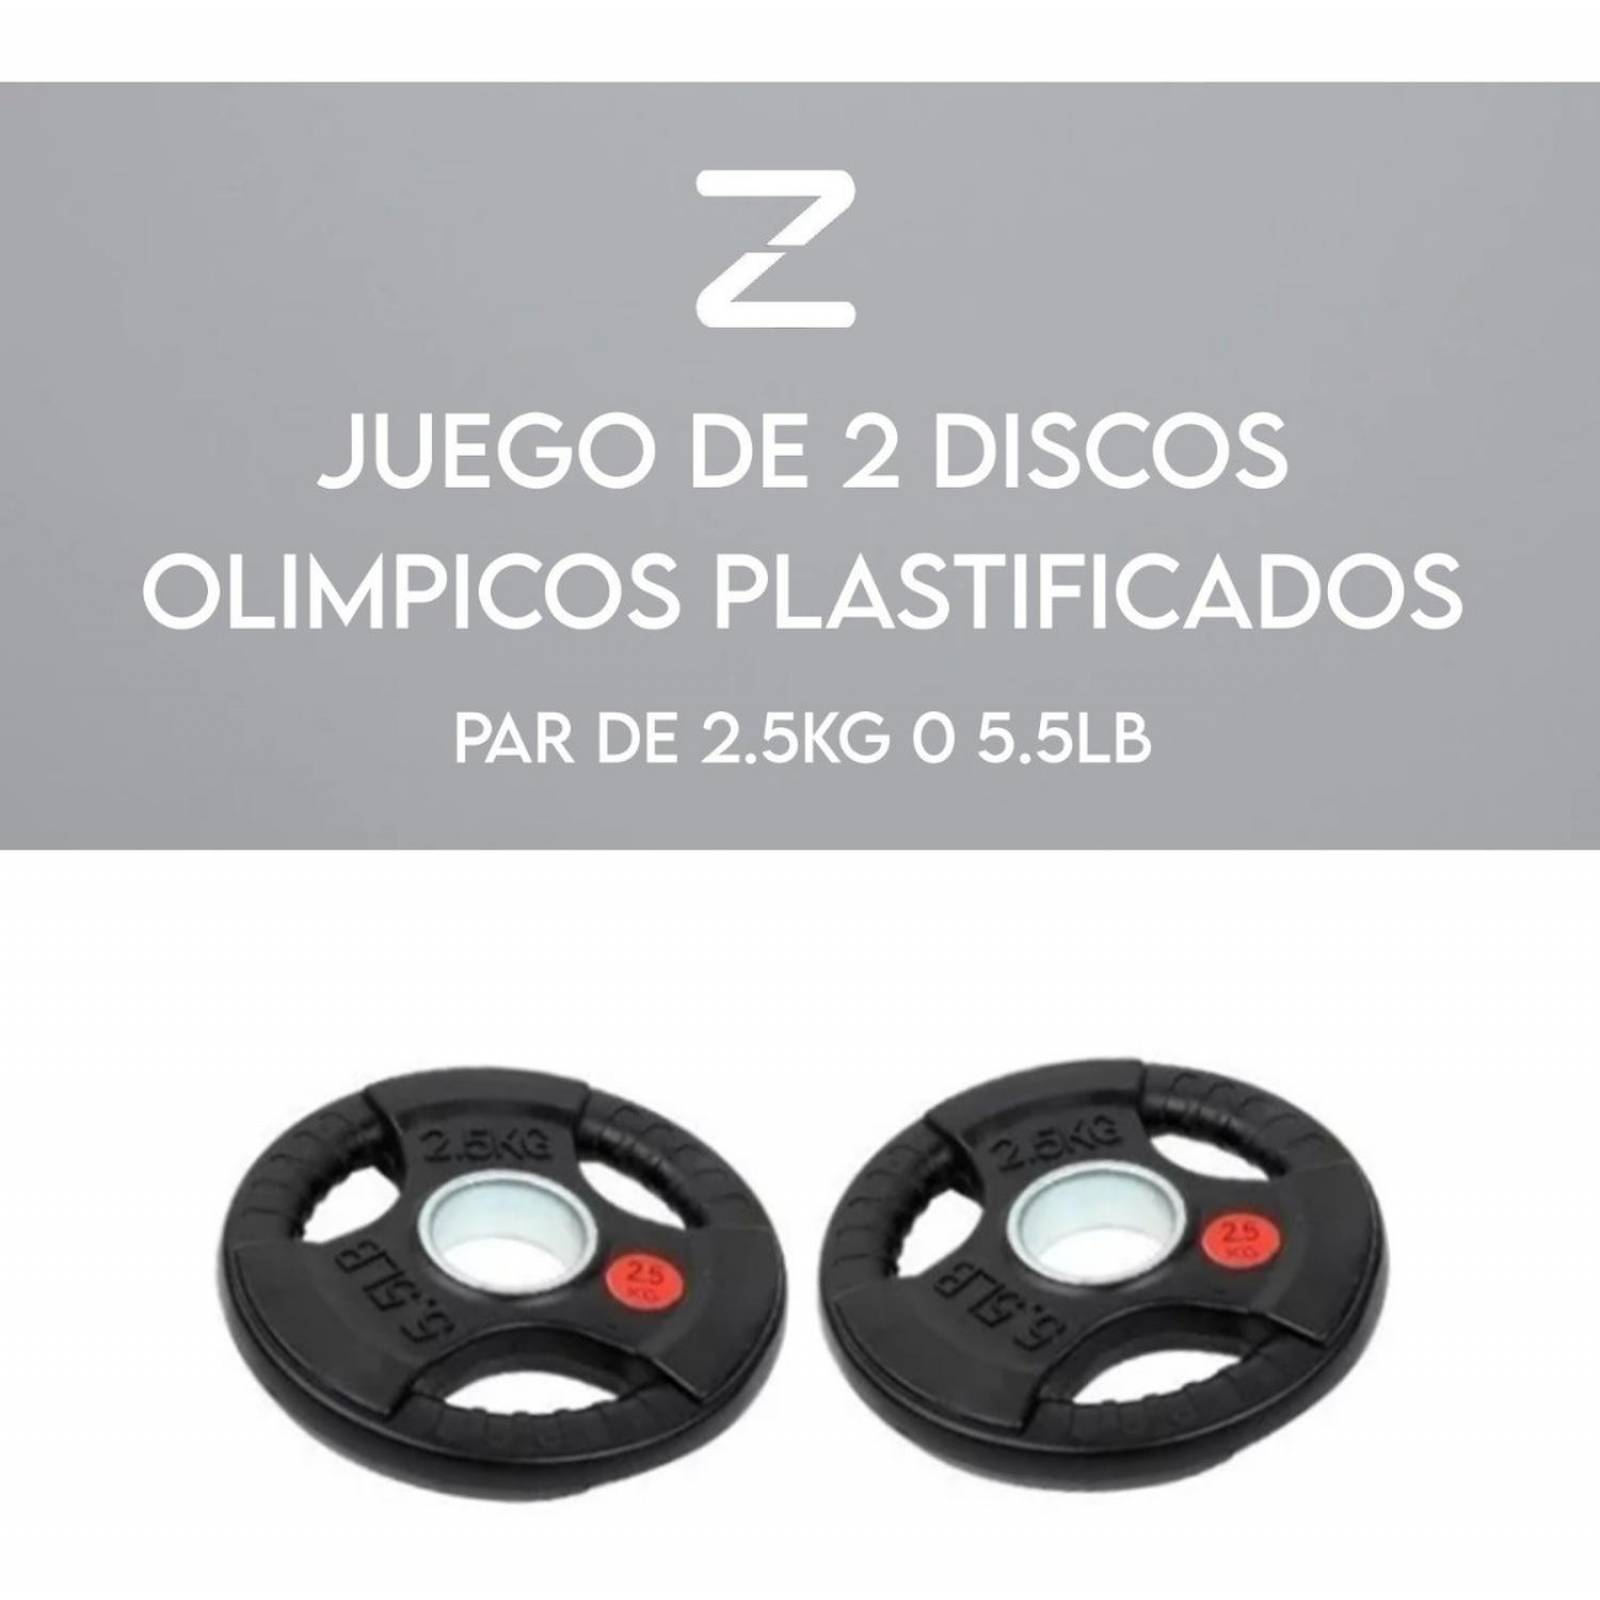 kit-set-juego-de-discos-olimpicos -body-solid-orst255-recubiertos-uretano-uso-rudo-gimnasio